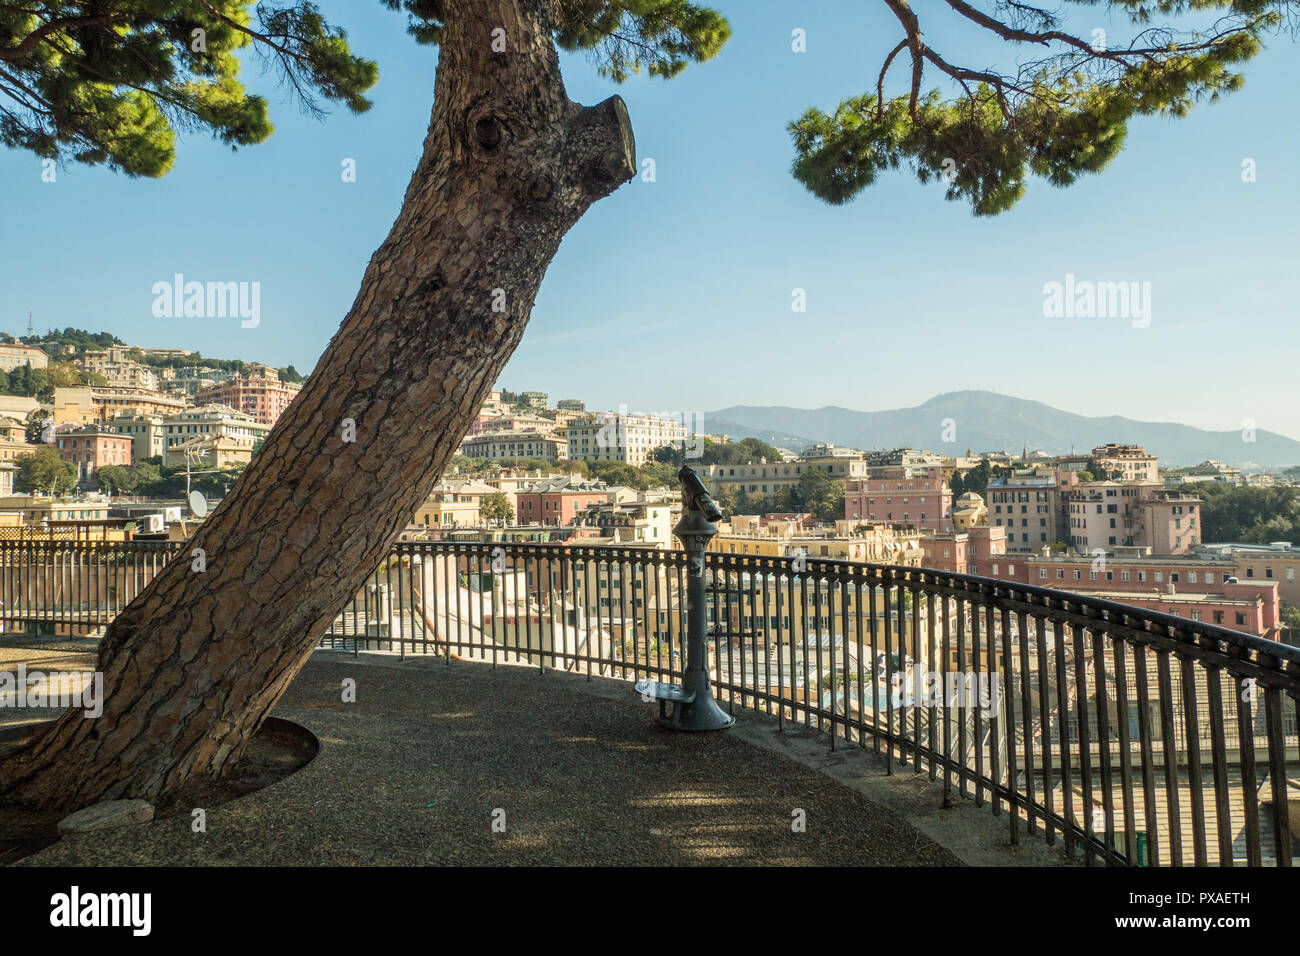 Genova, una città portuale nella regione Liguria. Come si vede dal punto di vista Spianata Castelletto. Un 'balcone con vista di 180 gradi. Foto Stock